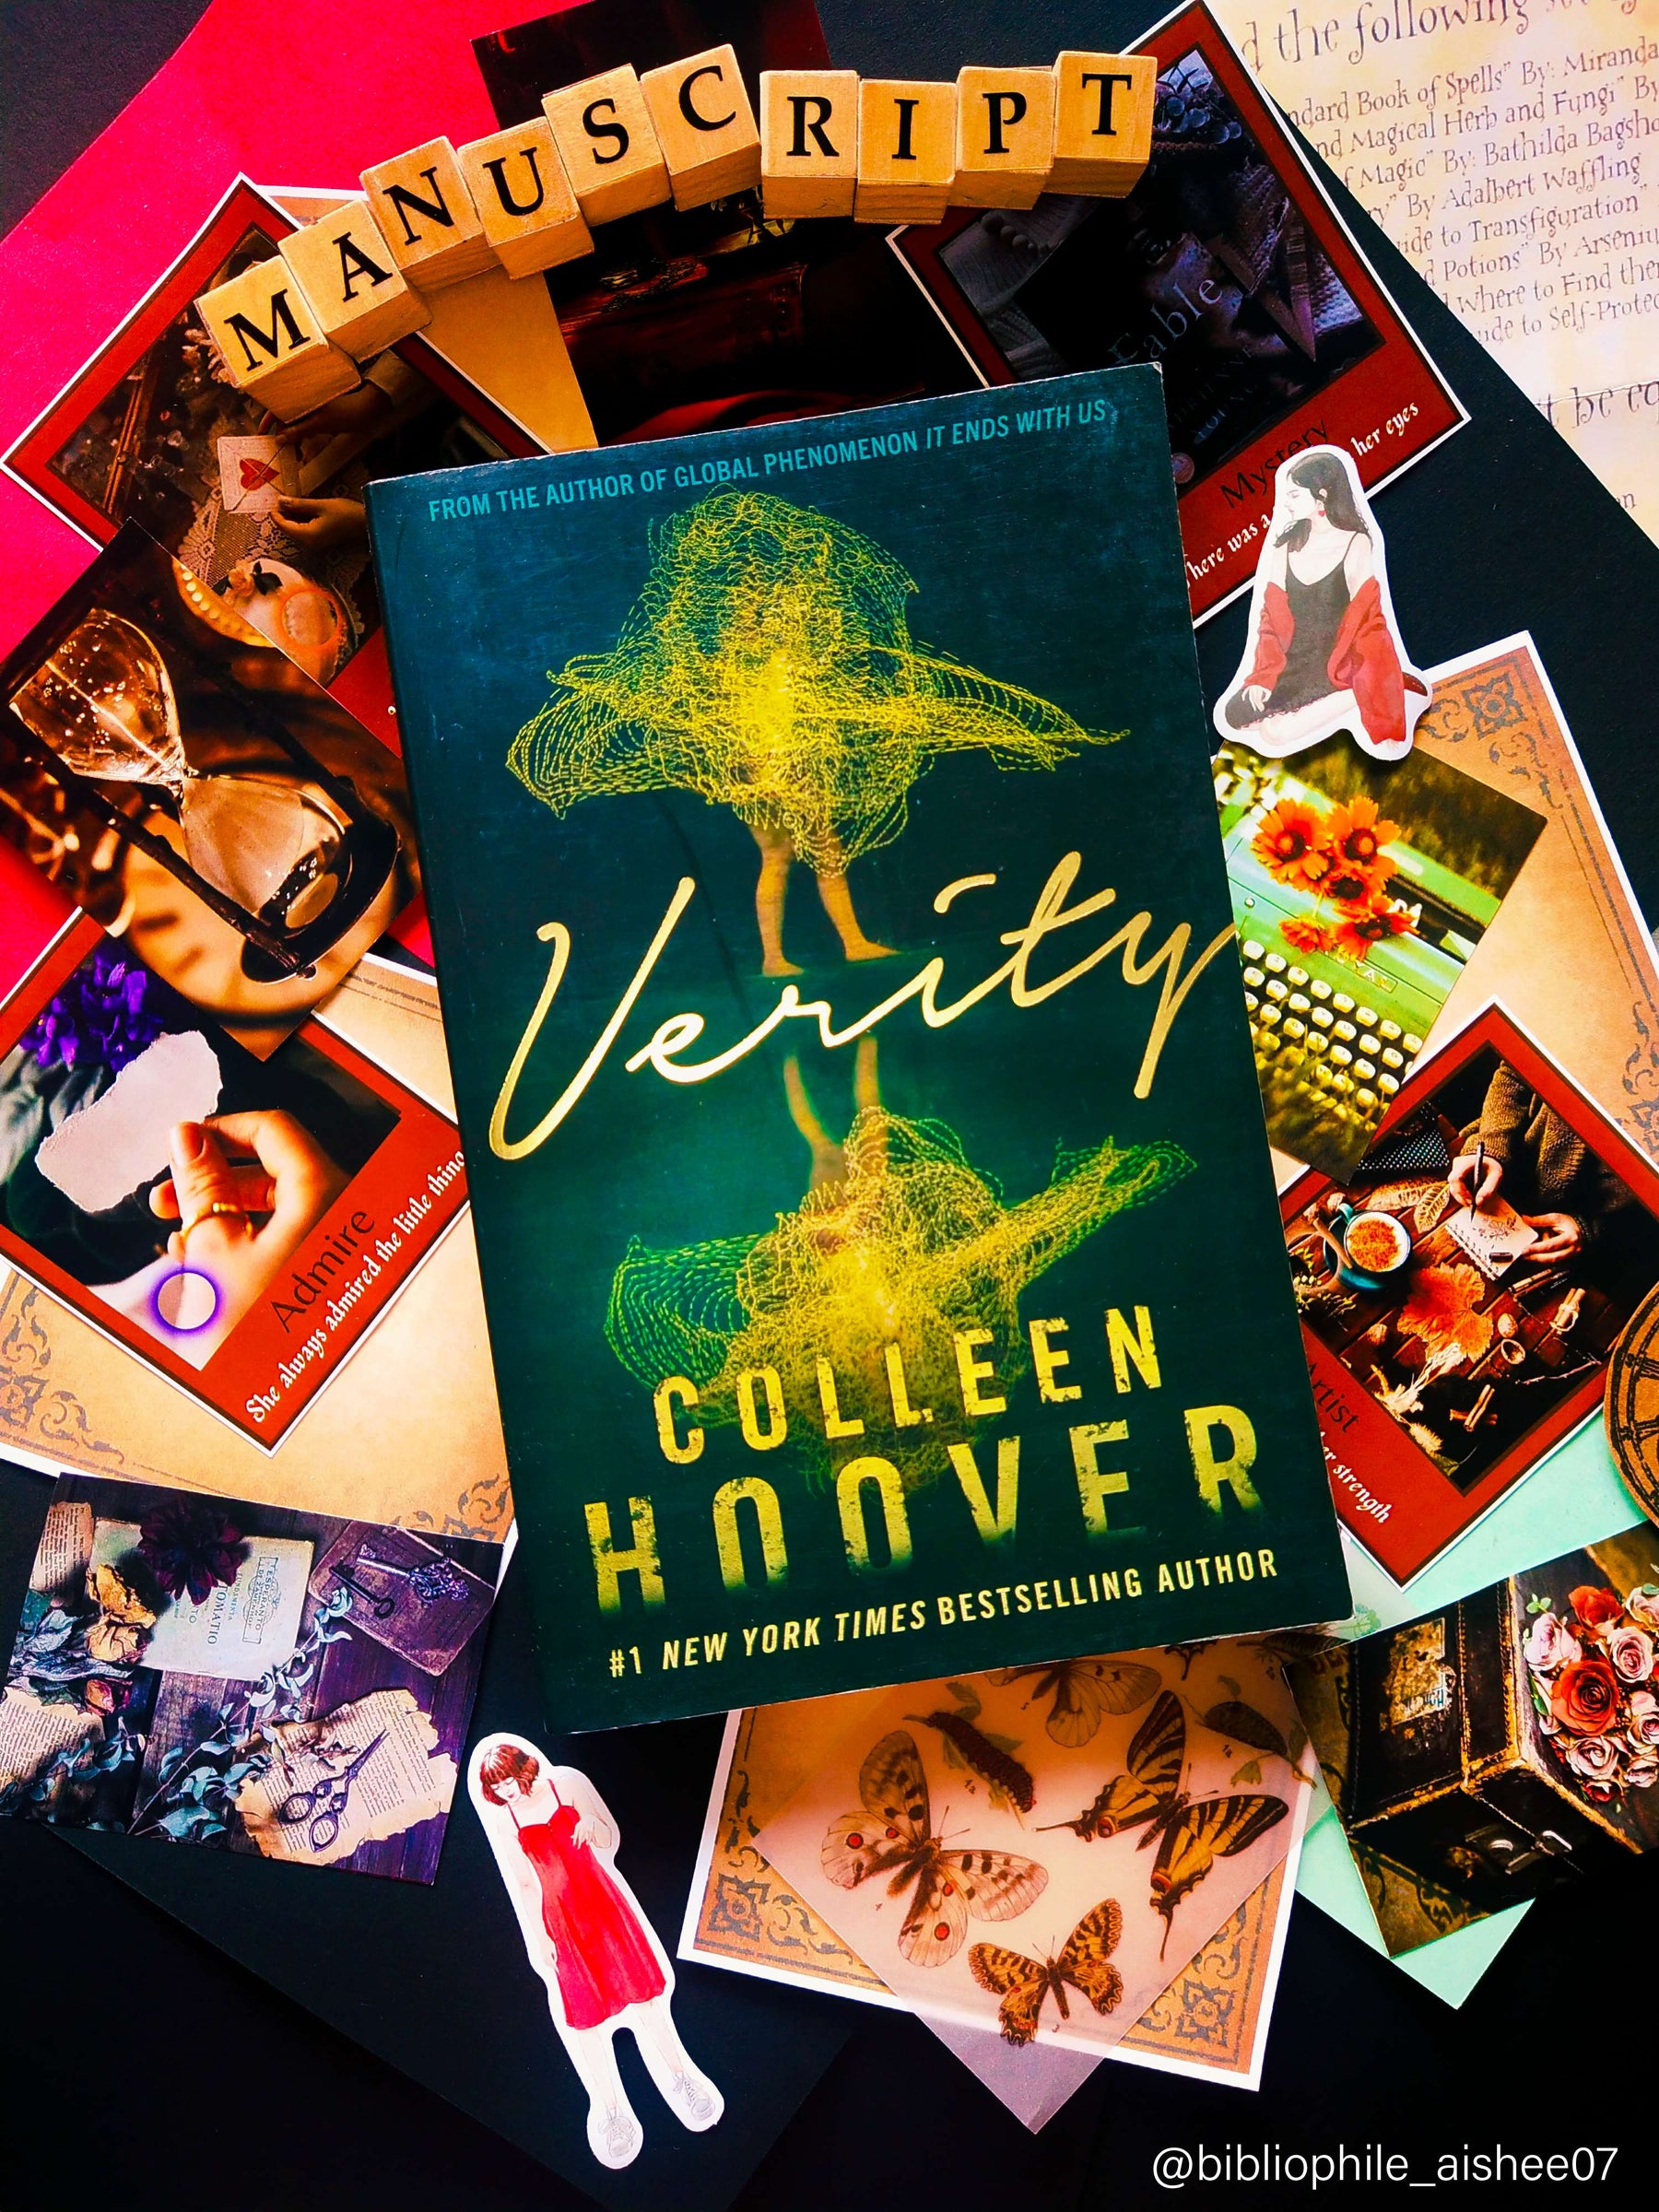 VERITY - Colleen Hoover